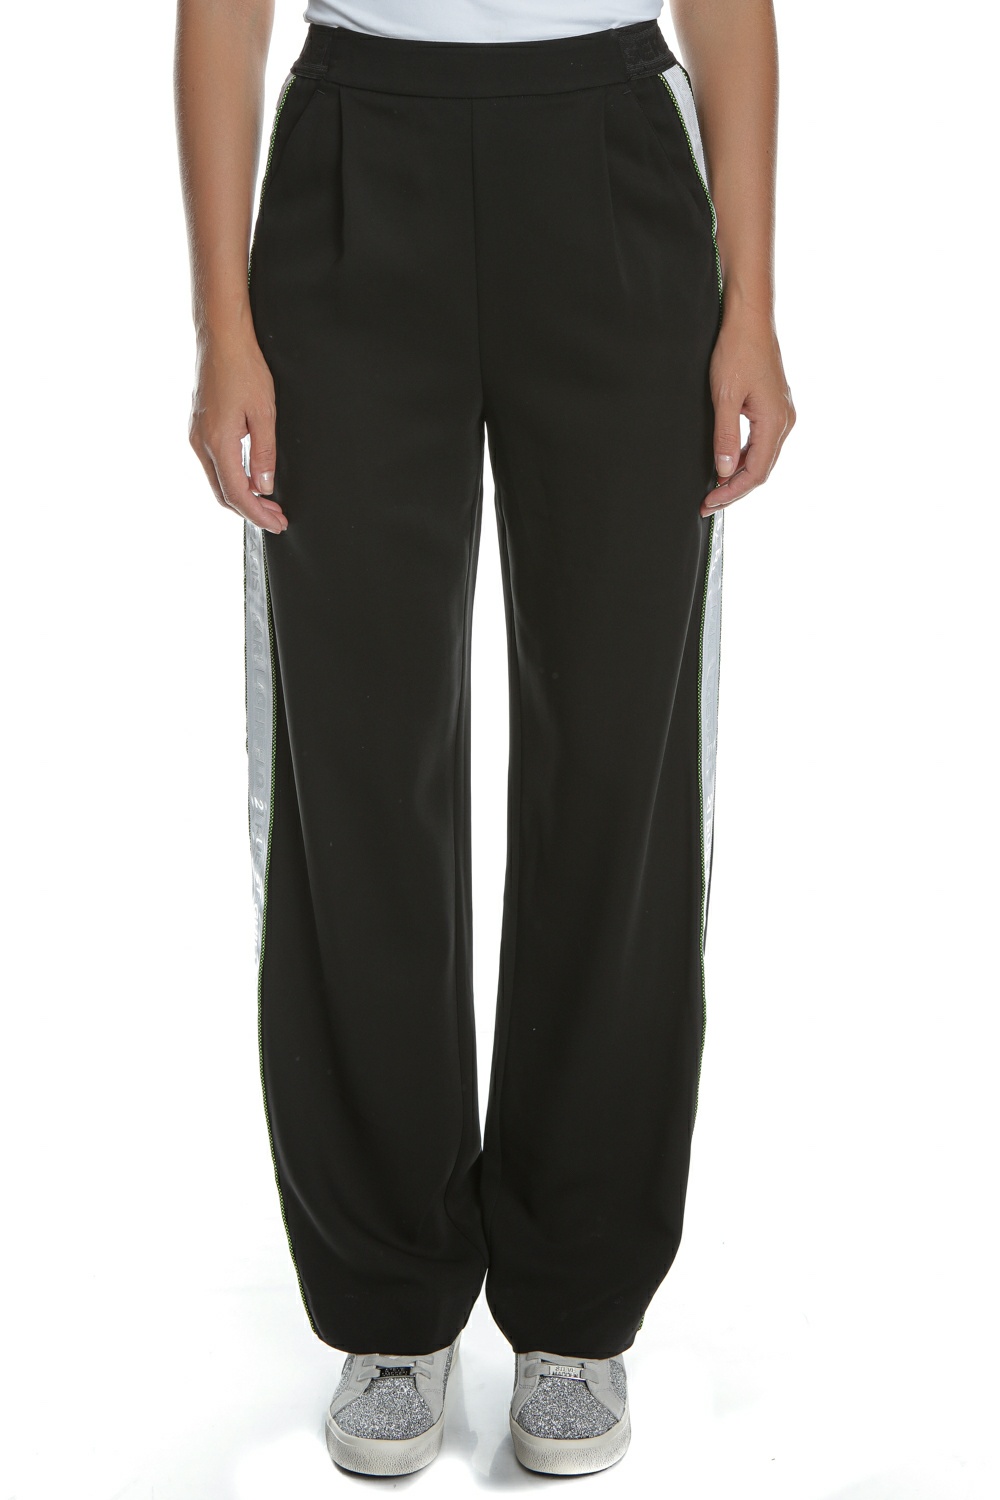 Γυναικεία/Ρούχα/Παντελόνια/Ισια Γραμμή KARL LAGERFELD - Γυναικείο παντελόνι KARL LAGERFELD Cady Pants W/ Logo Tape μαύρο